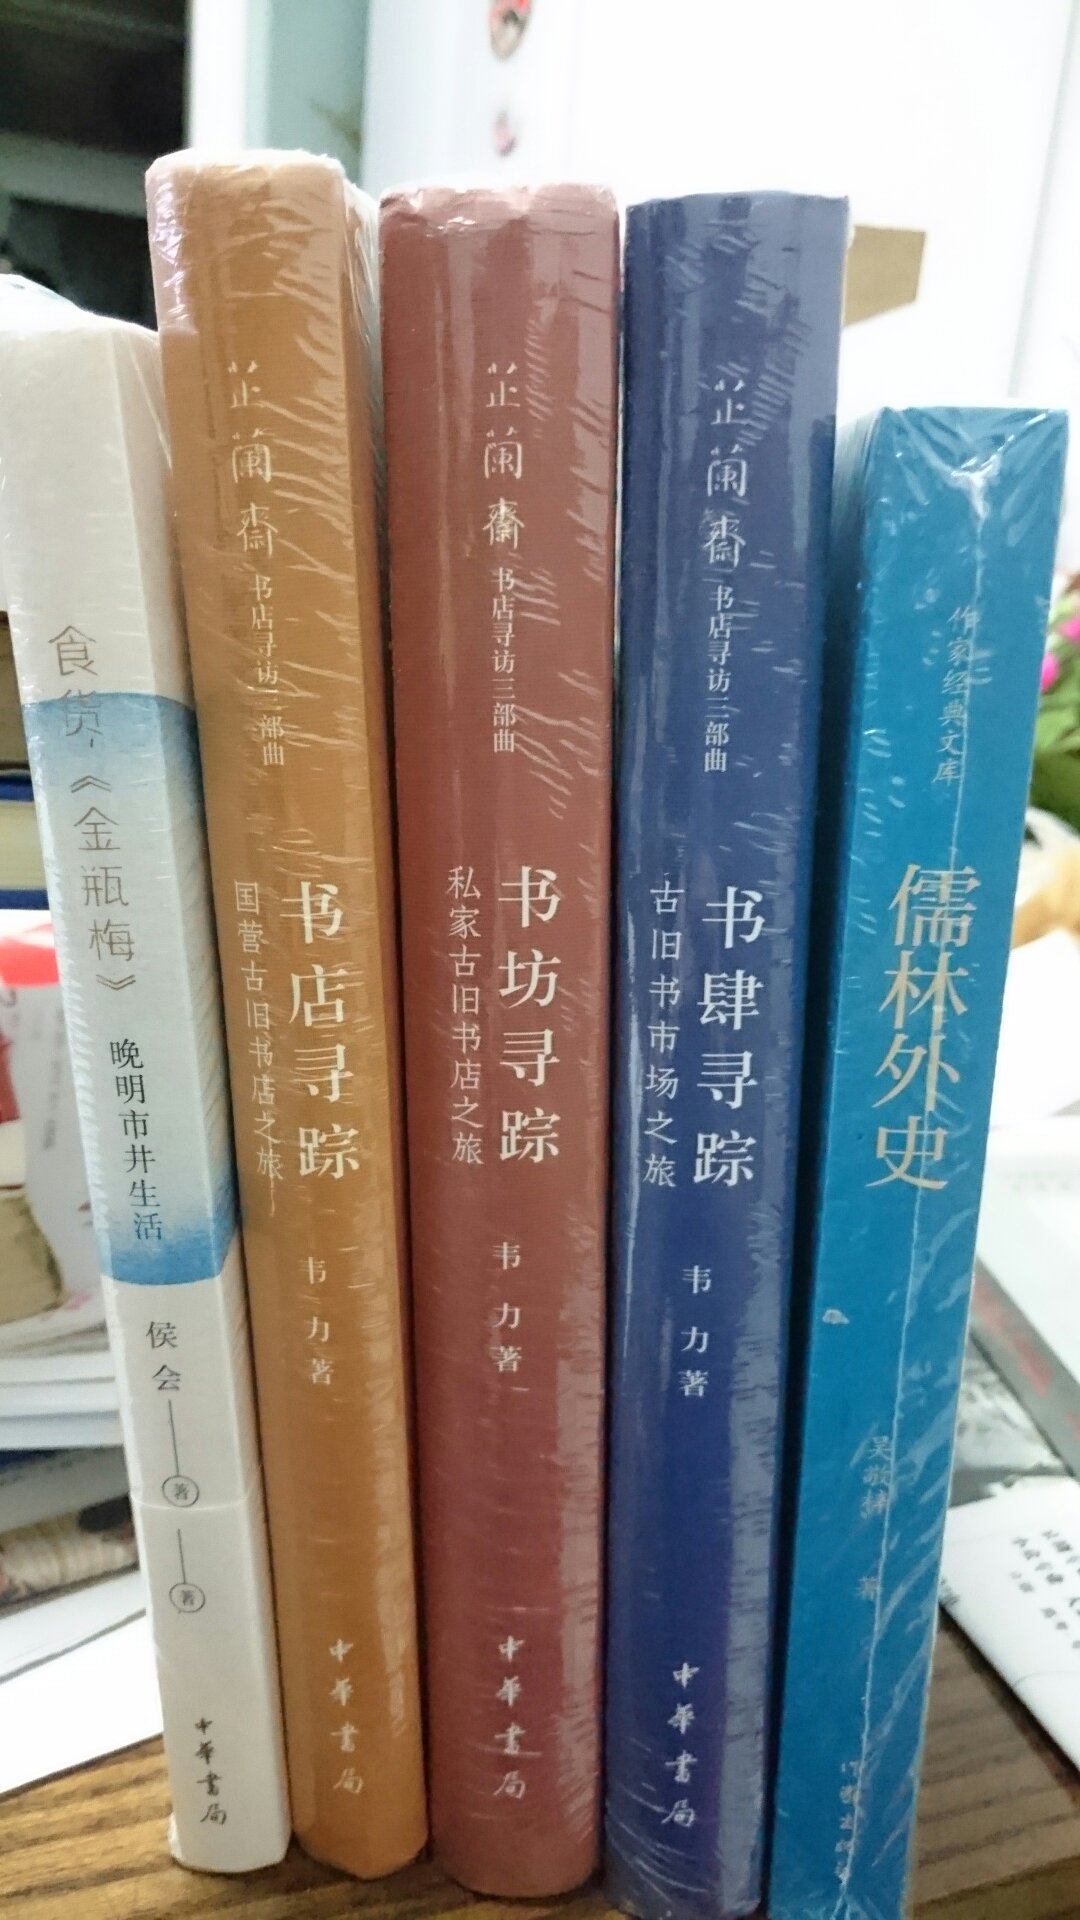 一次买了六本书。只能慢慢读了。书的质量绝对一流。中华书局值得信赖！